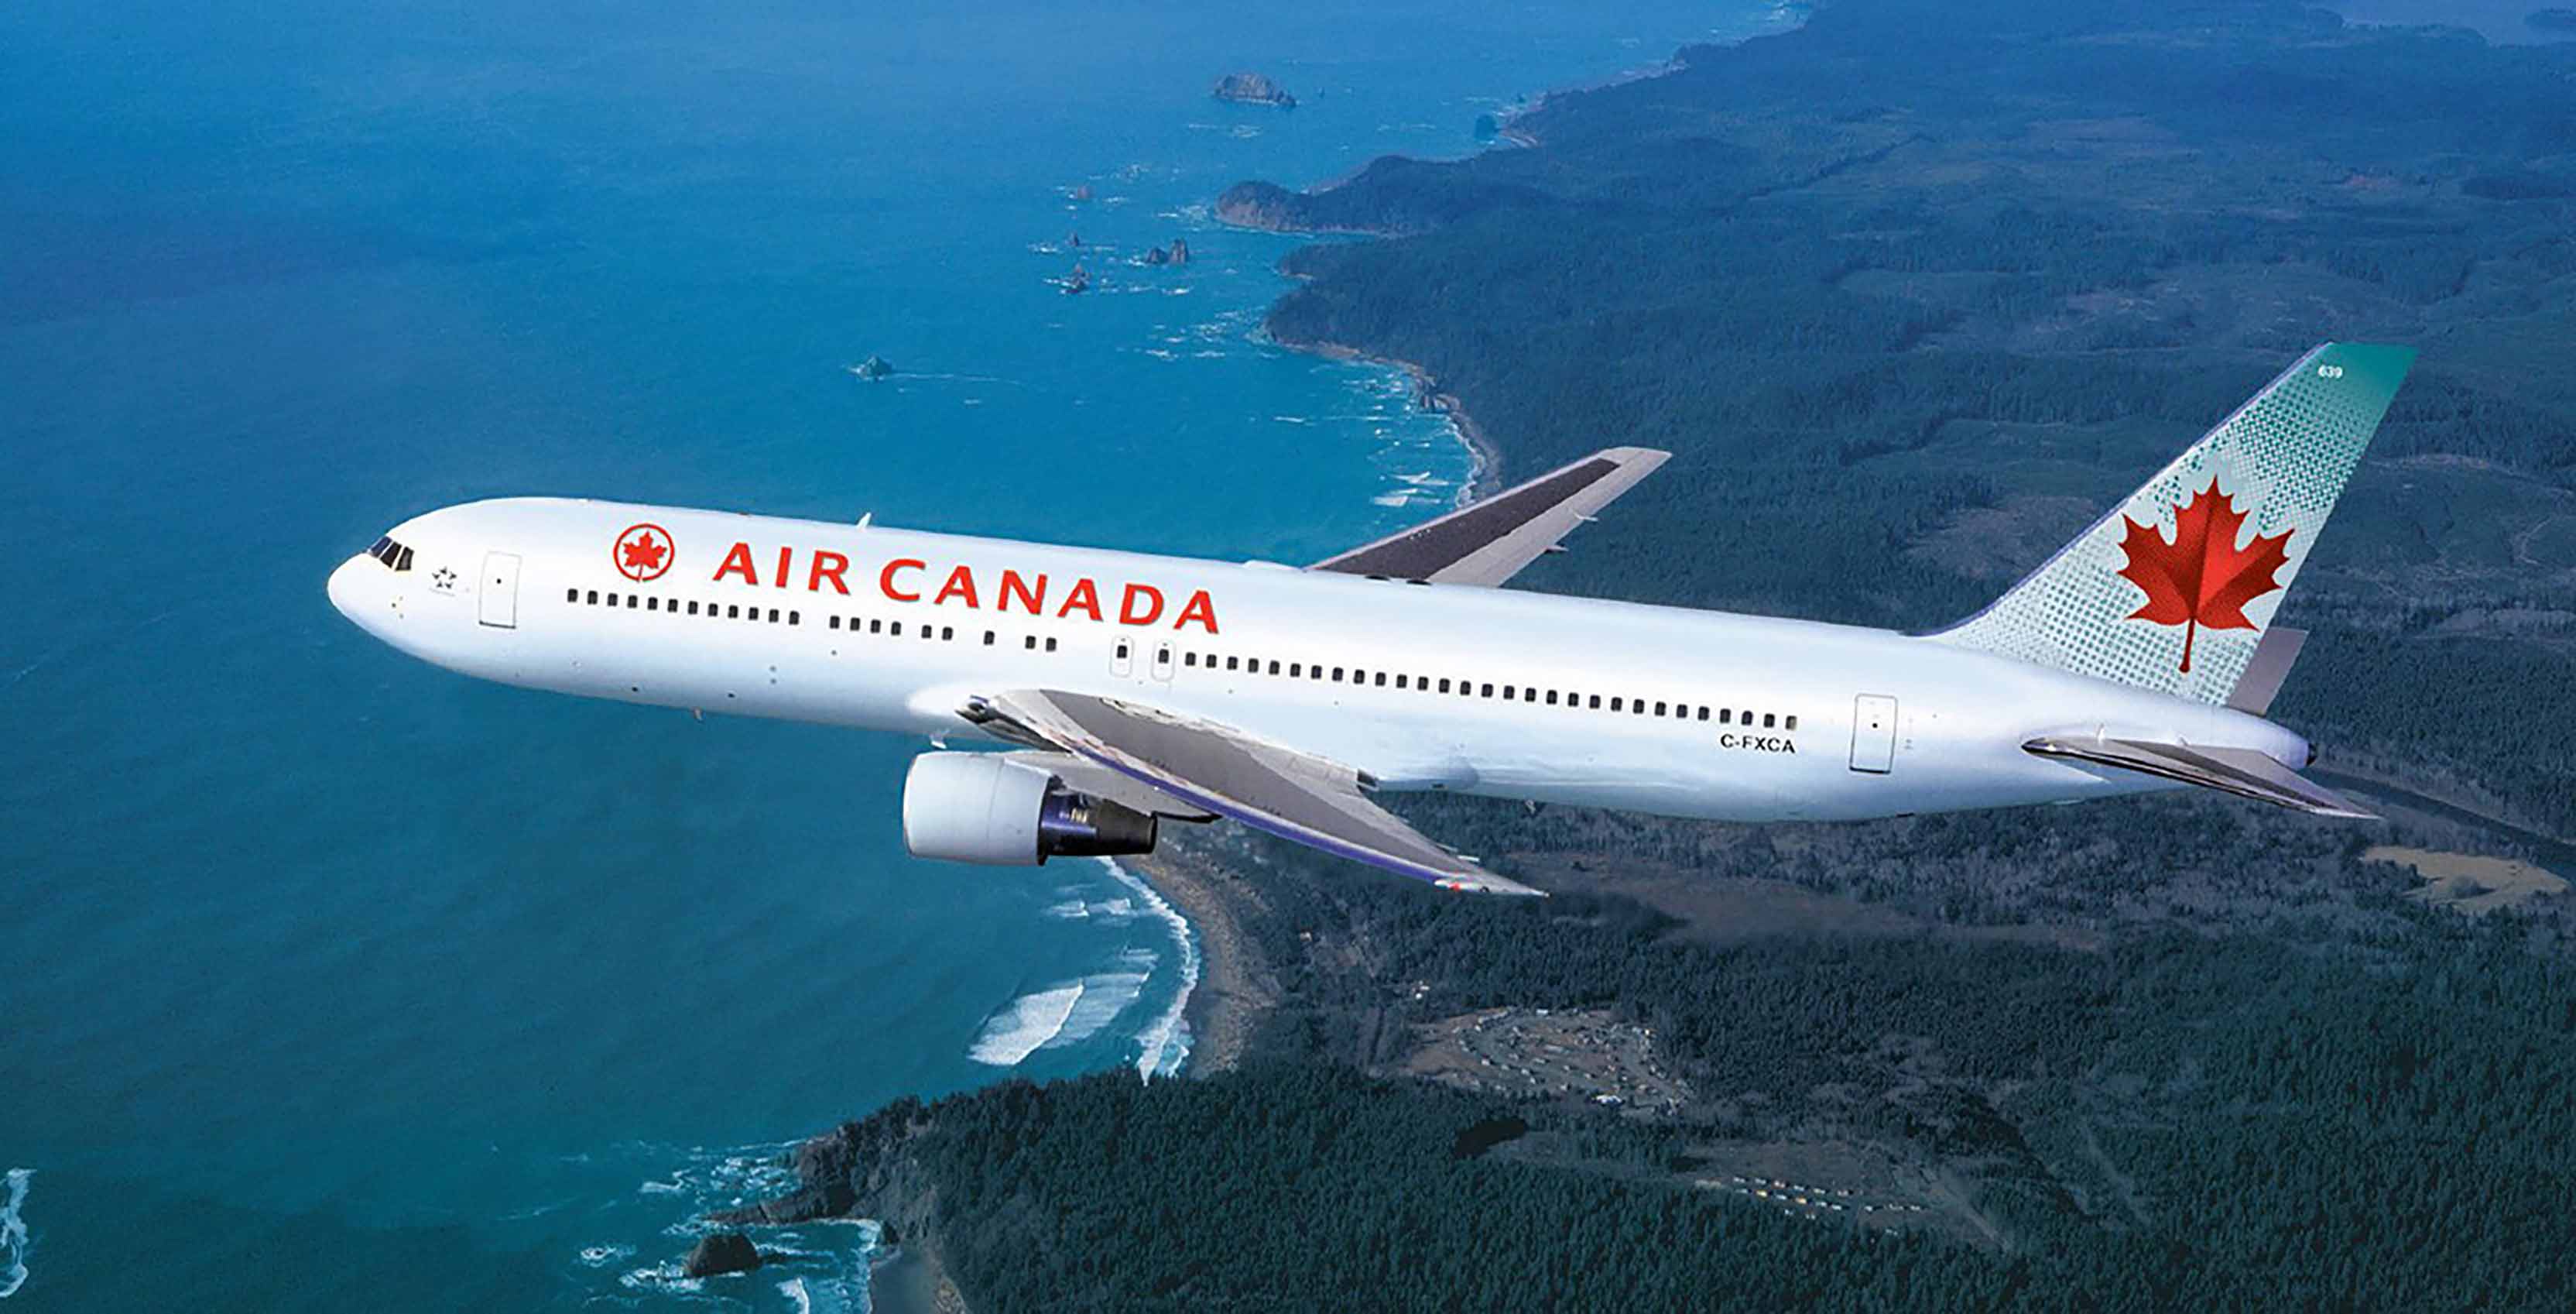 Air Canada plane in air